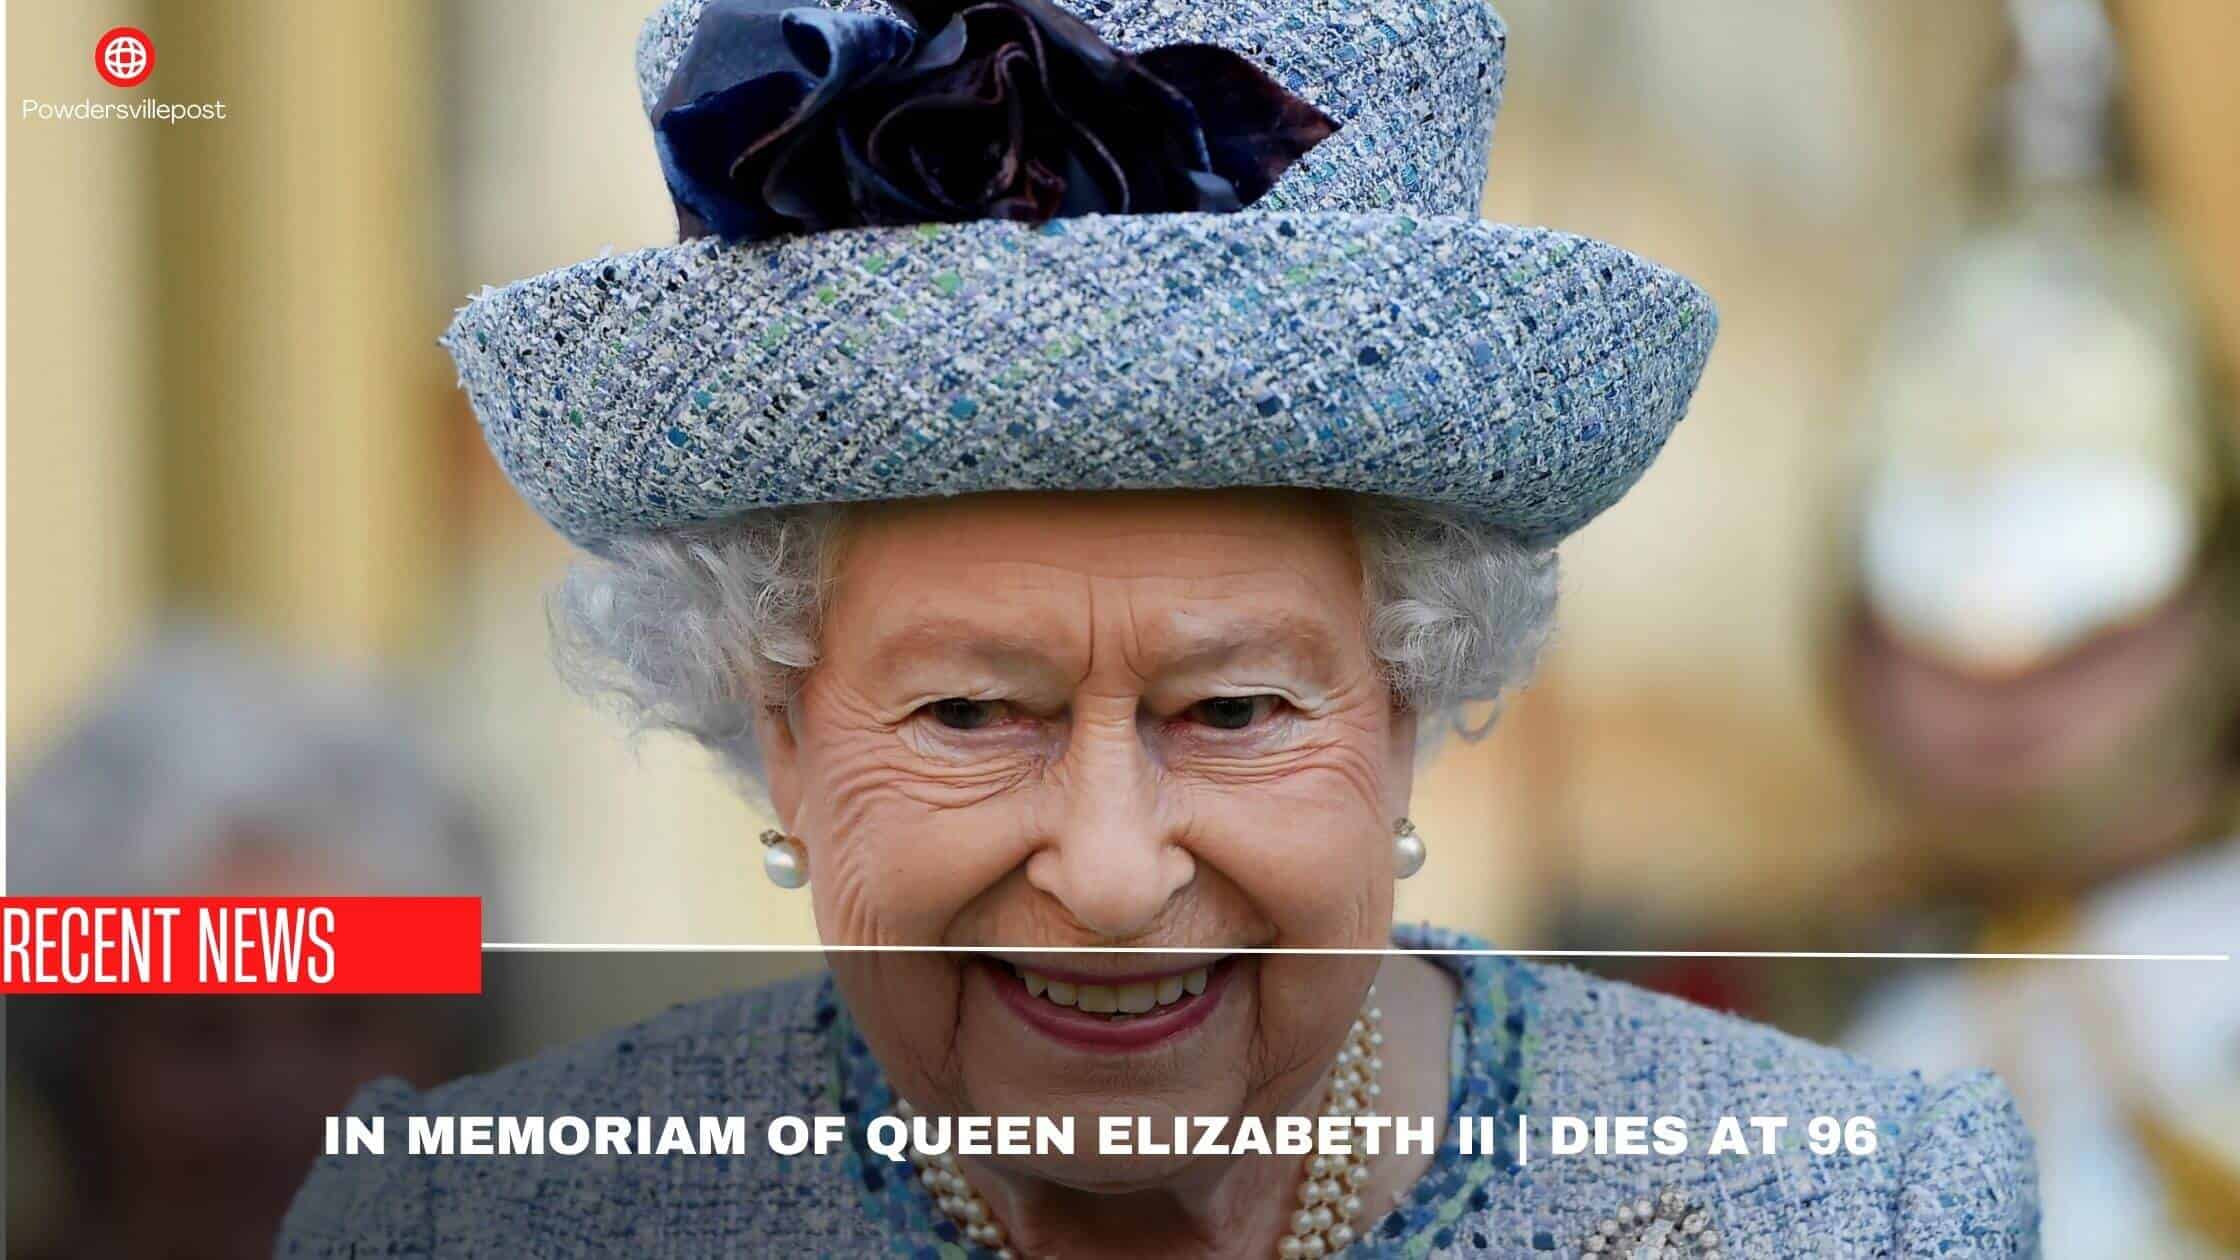 In Memoriam Of Queen Elizabeth II Dies At 96